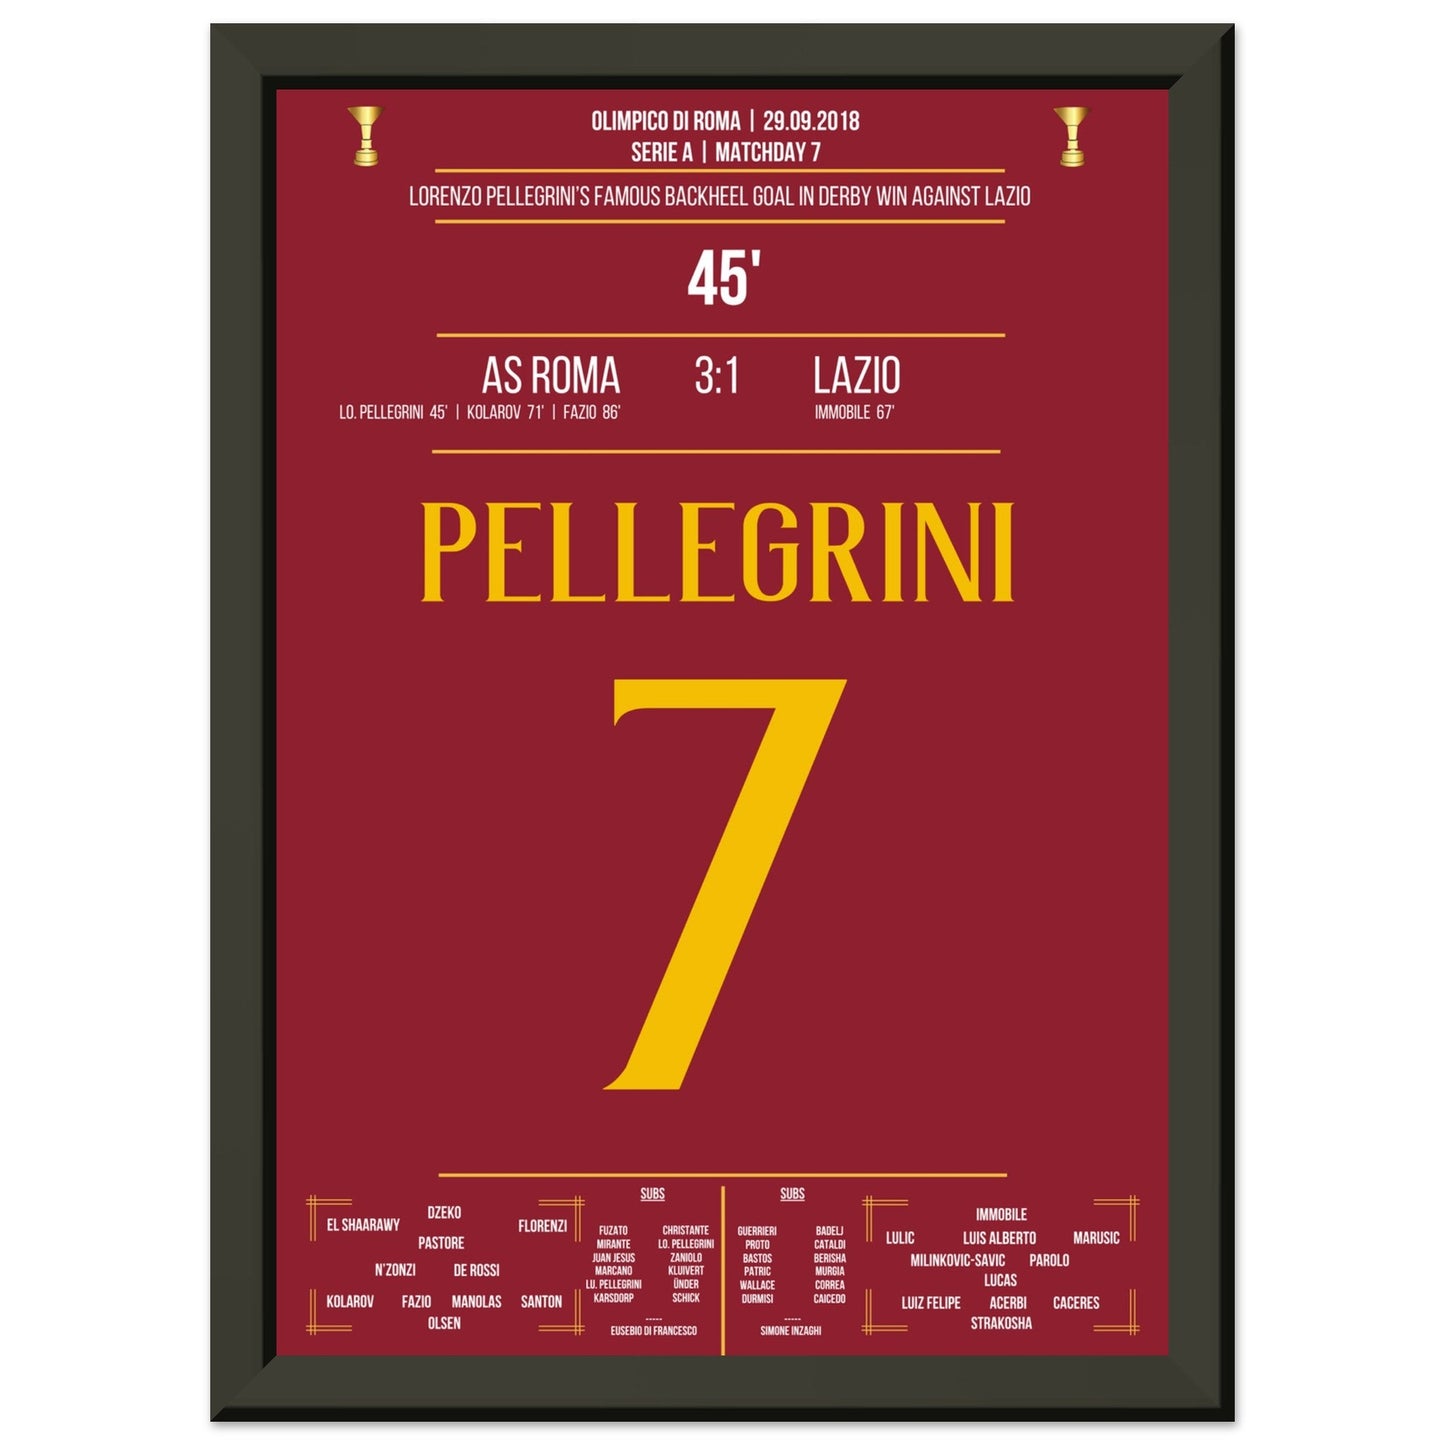 Pellegrini's Hackentor im Derby Sieg gegen Lazio in 2018